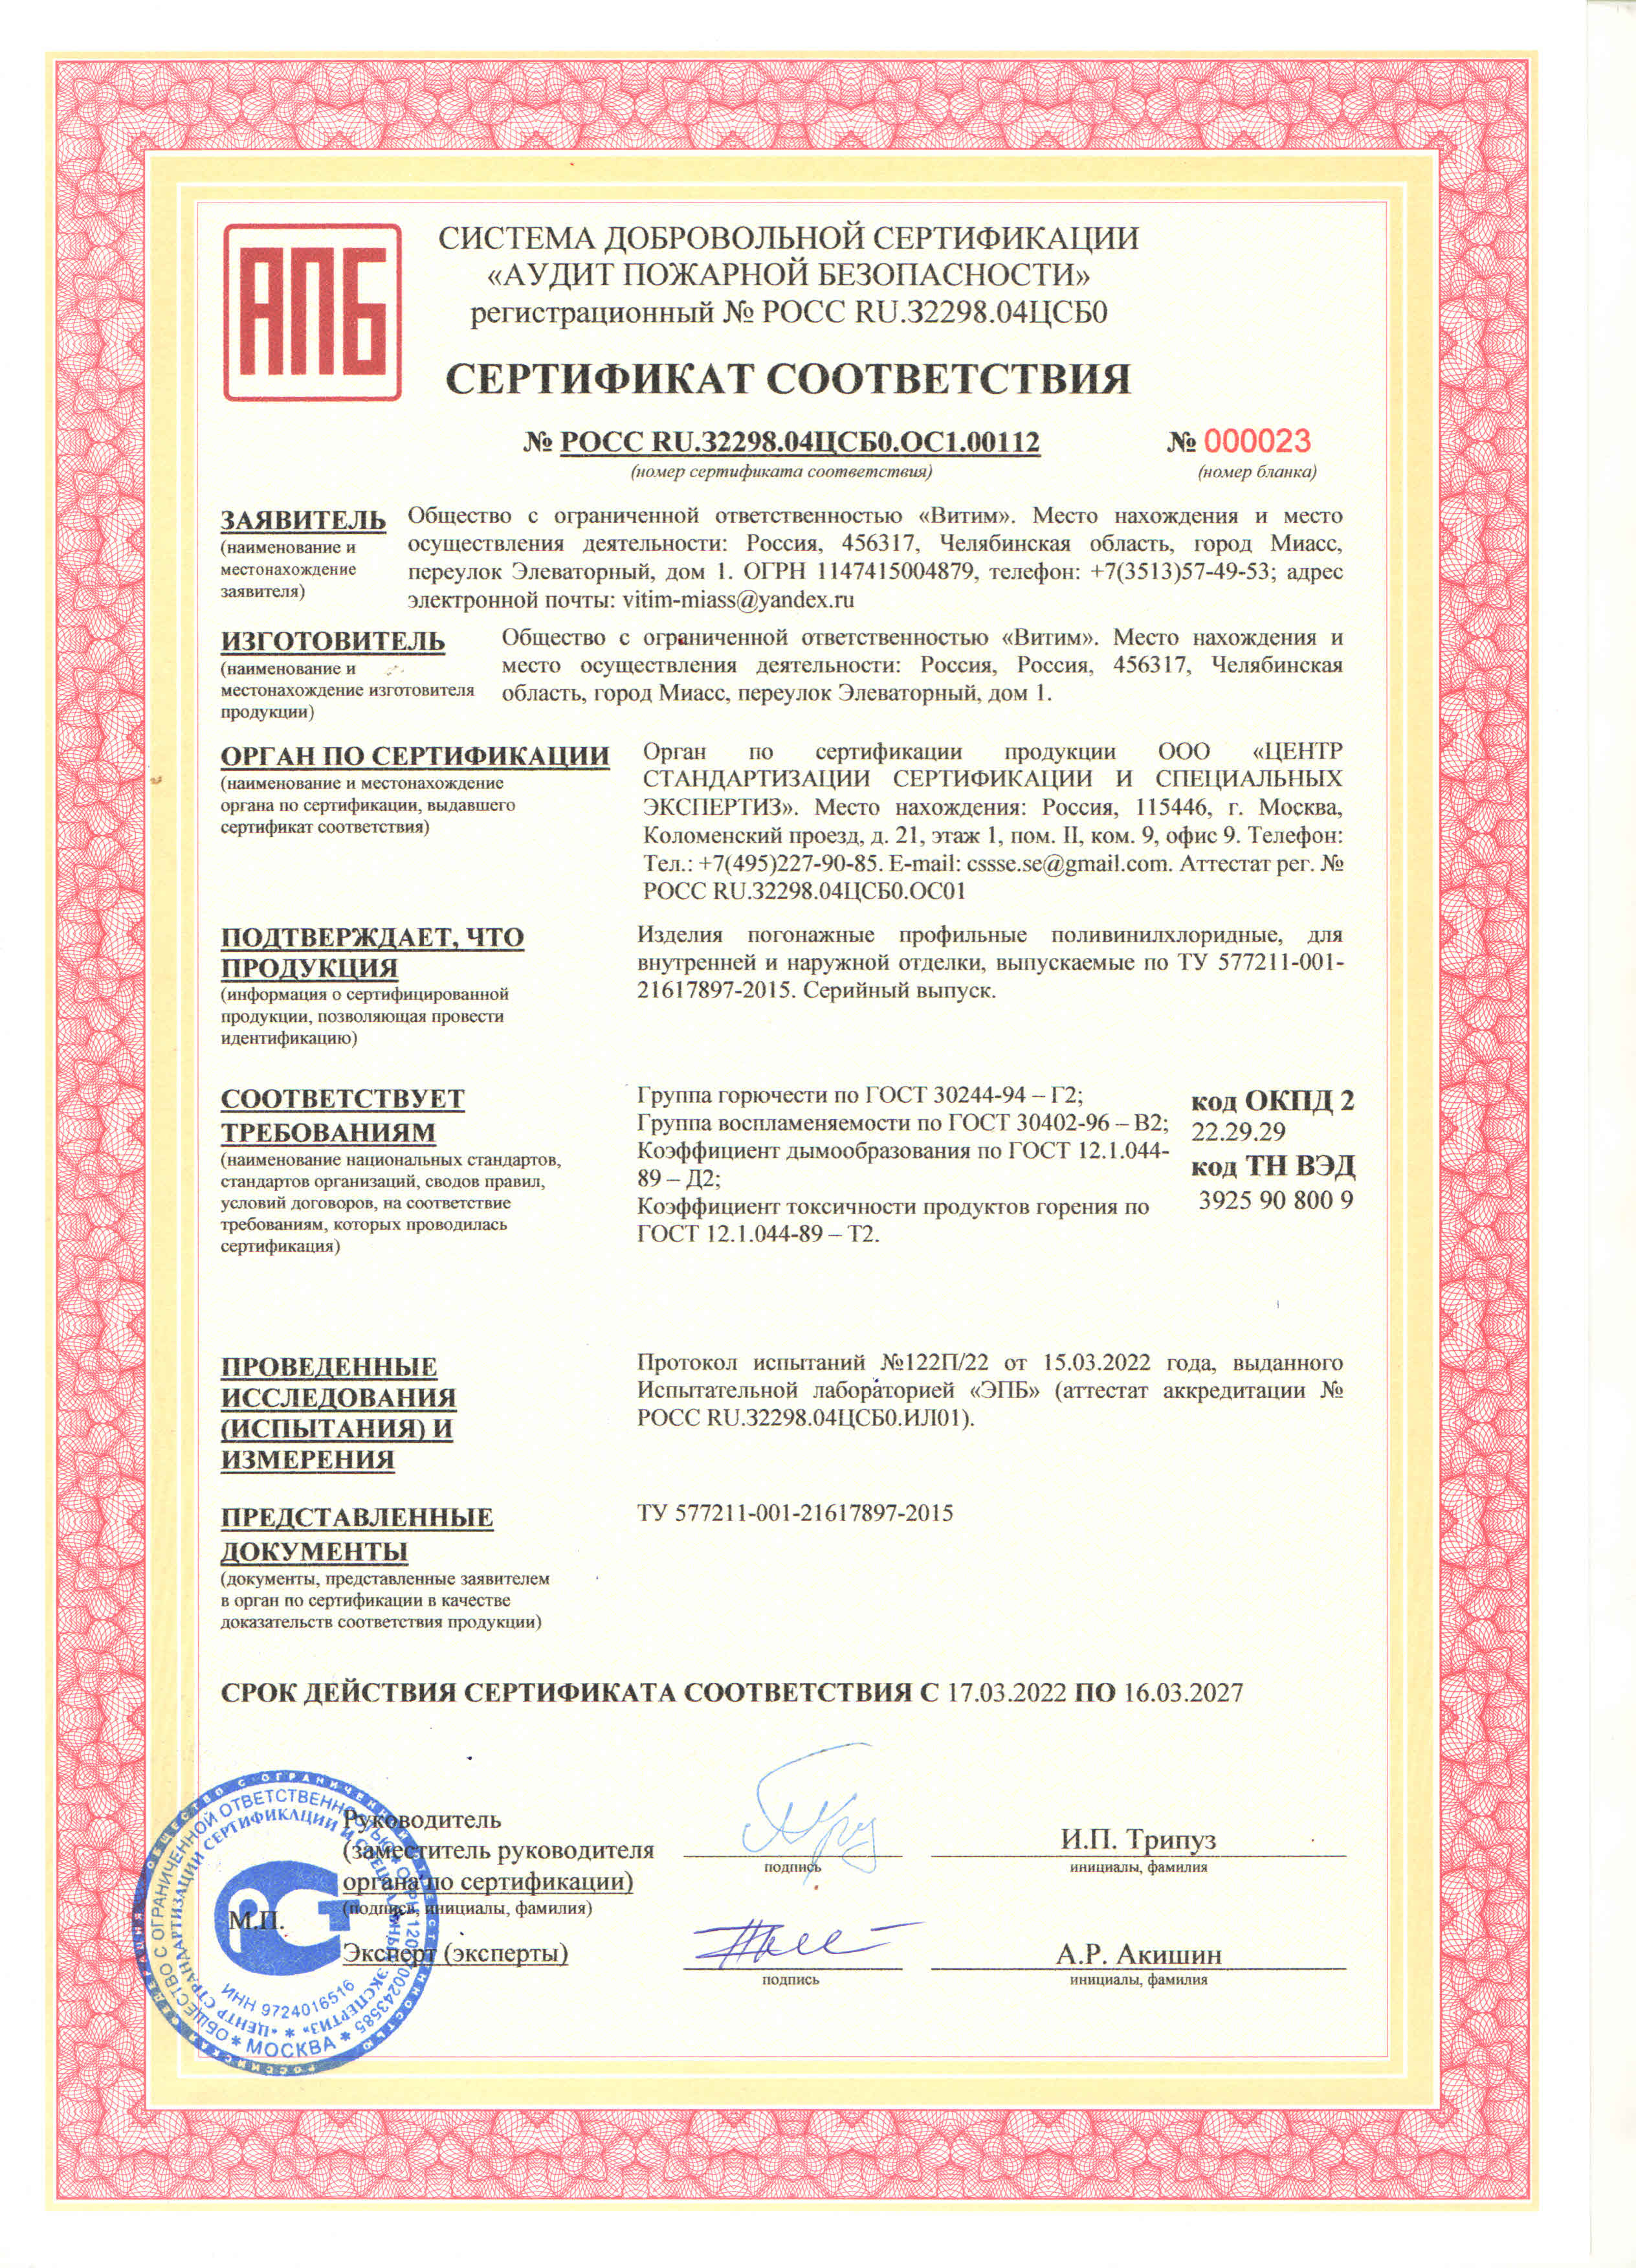 Сертификат соответствия Технического регламента о требованиях пожарной безопасности (СПБ) до 2027 г.